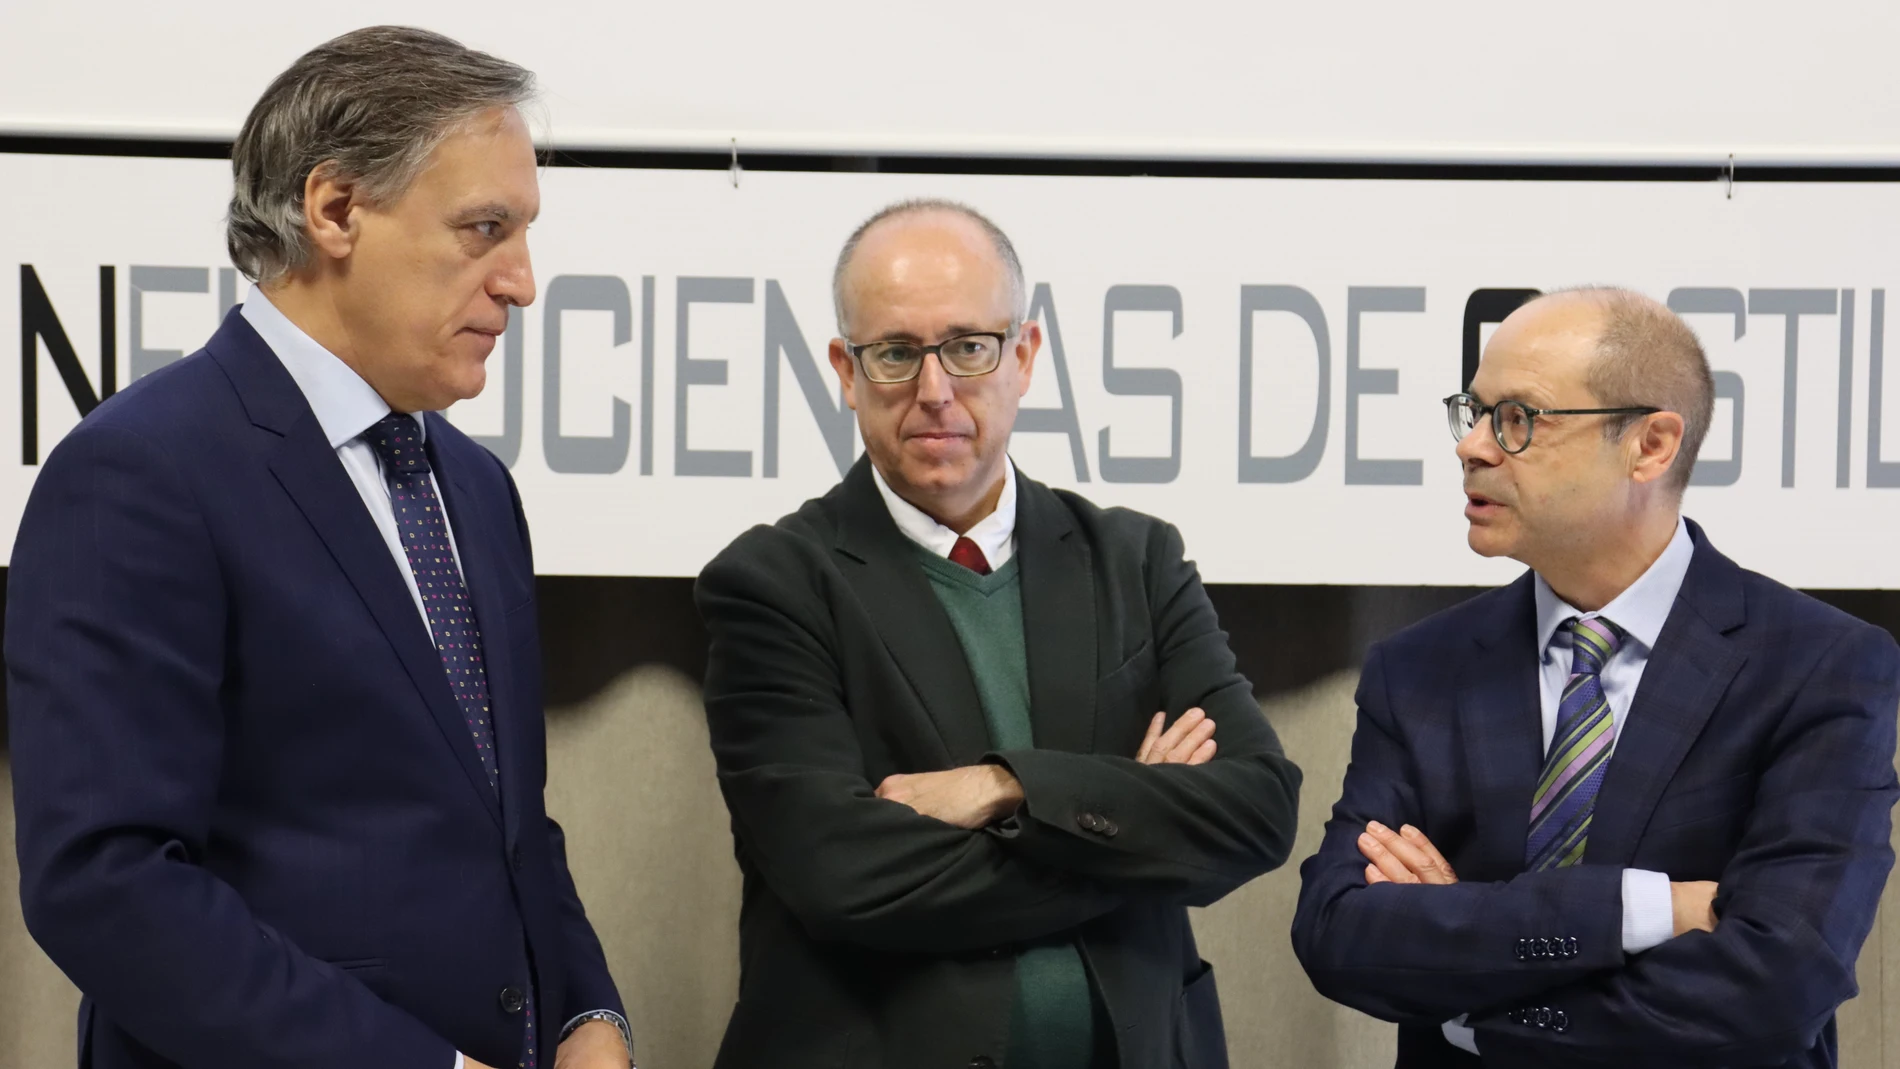 José Miguel Mateos Roco, vicerrector de Investigación de la USAL; Carlos García Carbayo, alcalde de Salamanca; y Manuel Sánchez Malmierca, director del INCyL